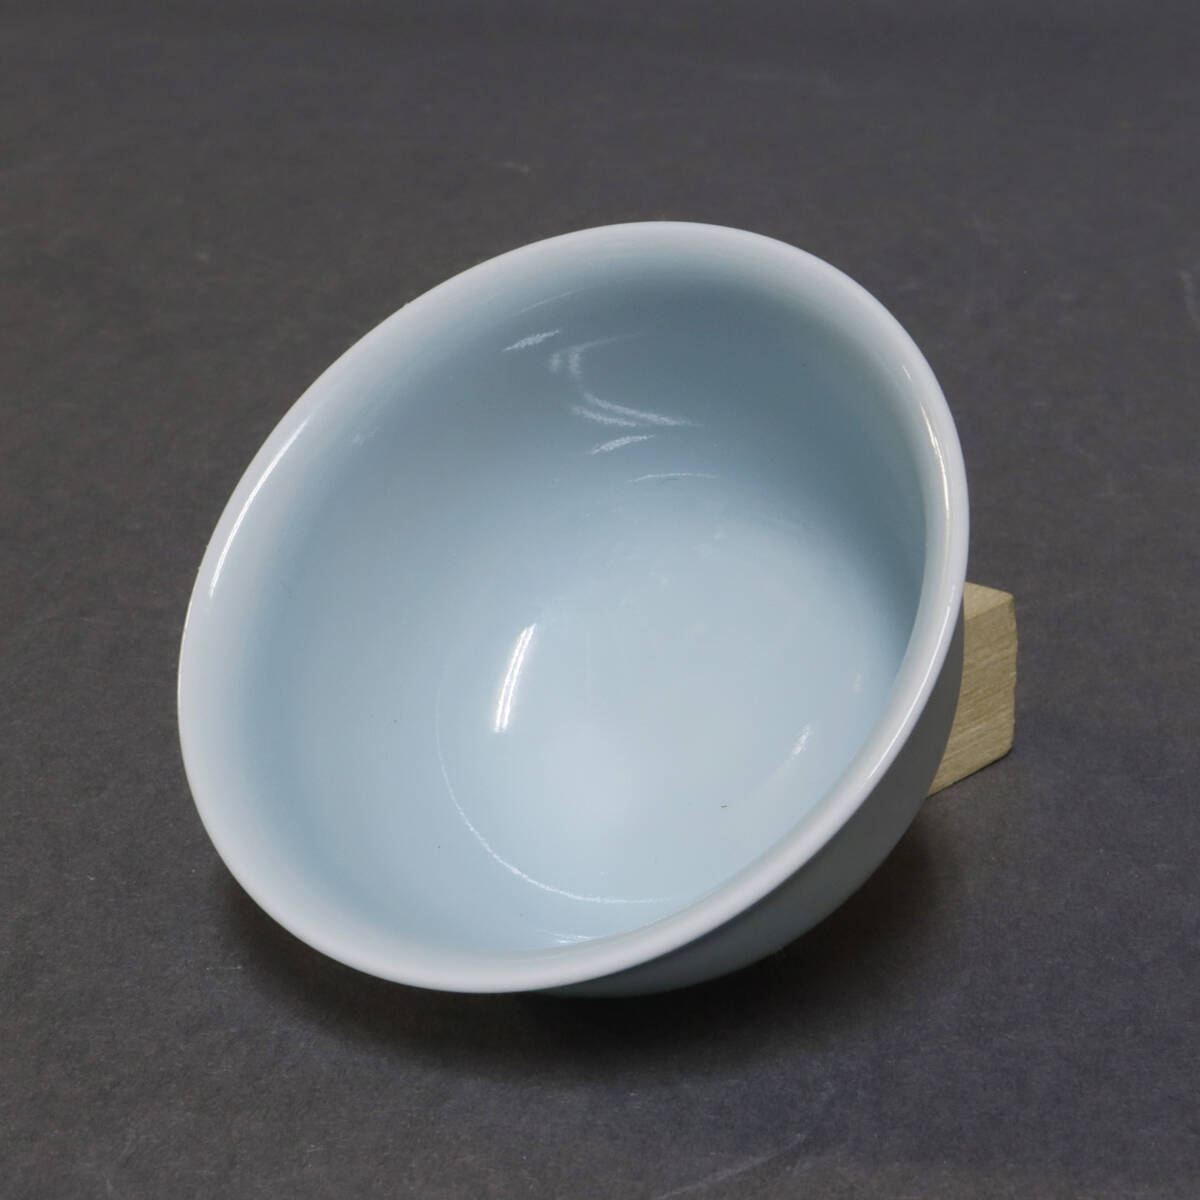 3 fee Kiyoshi manner . flat (.... member ) celadon sake sake cup genuineness guarantee 